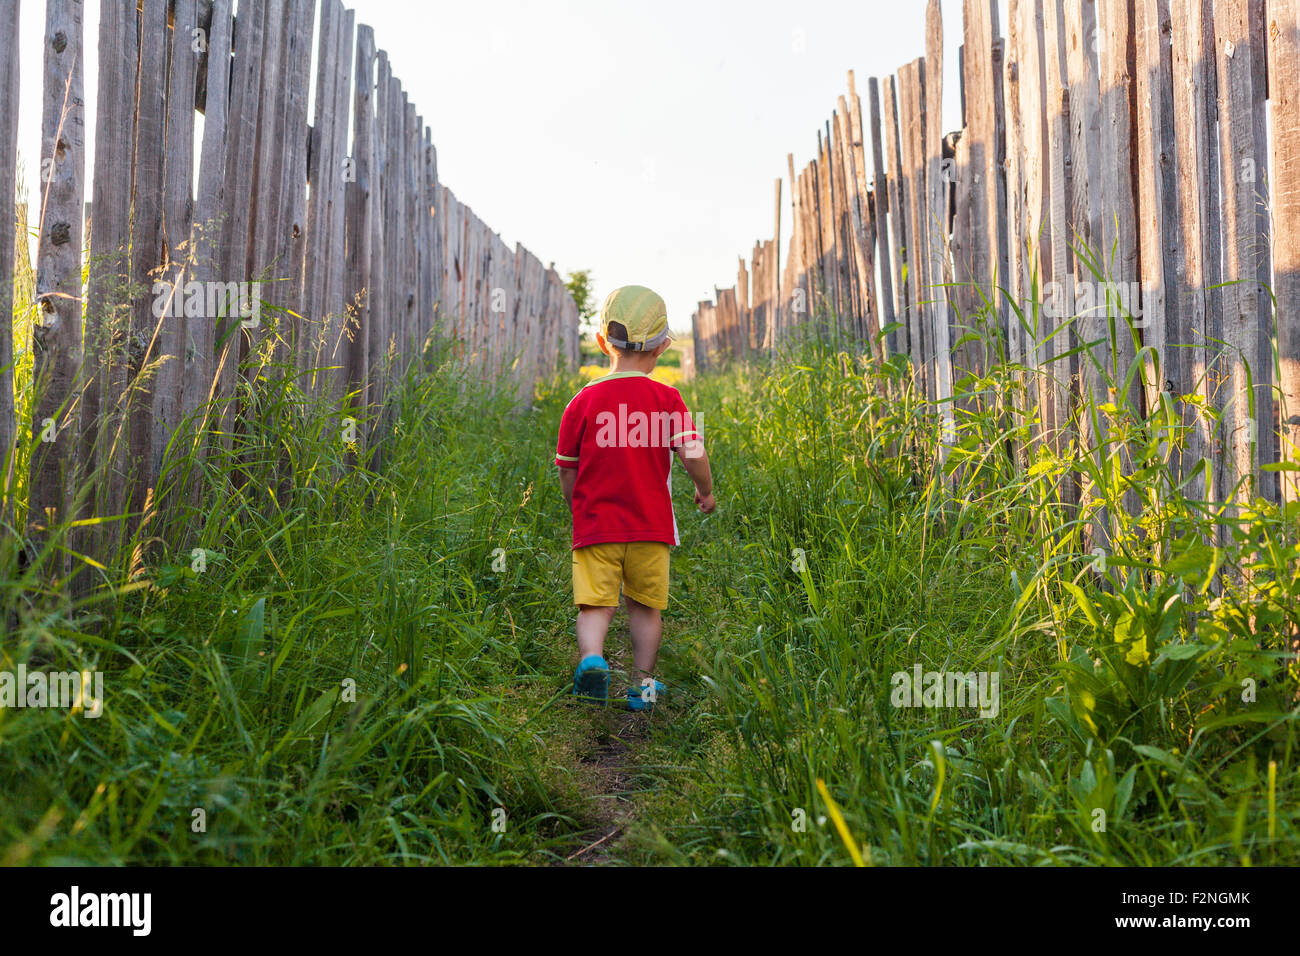 Mari boy camminando in erba tra le recinzioni Foto Stock